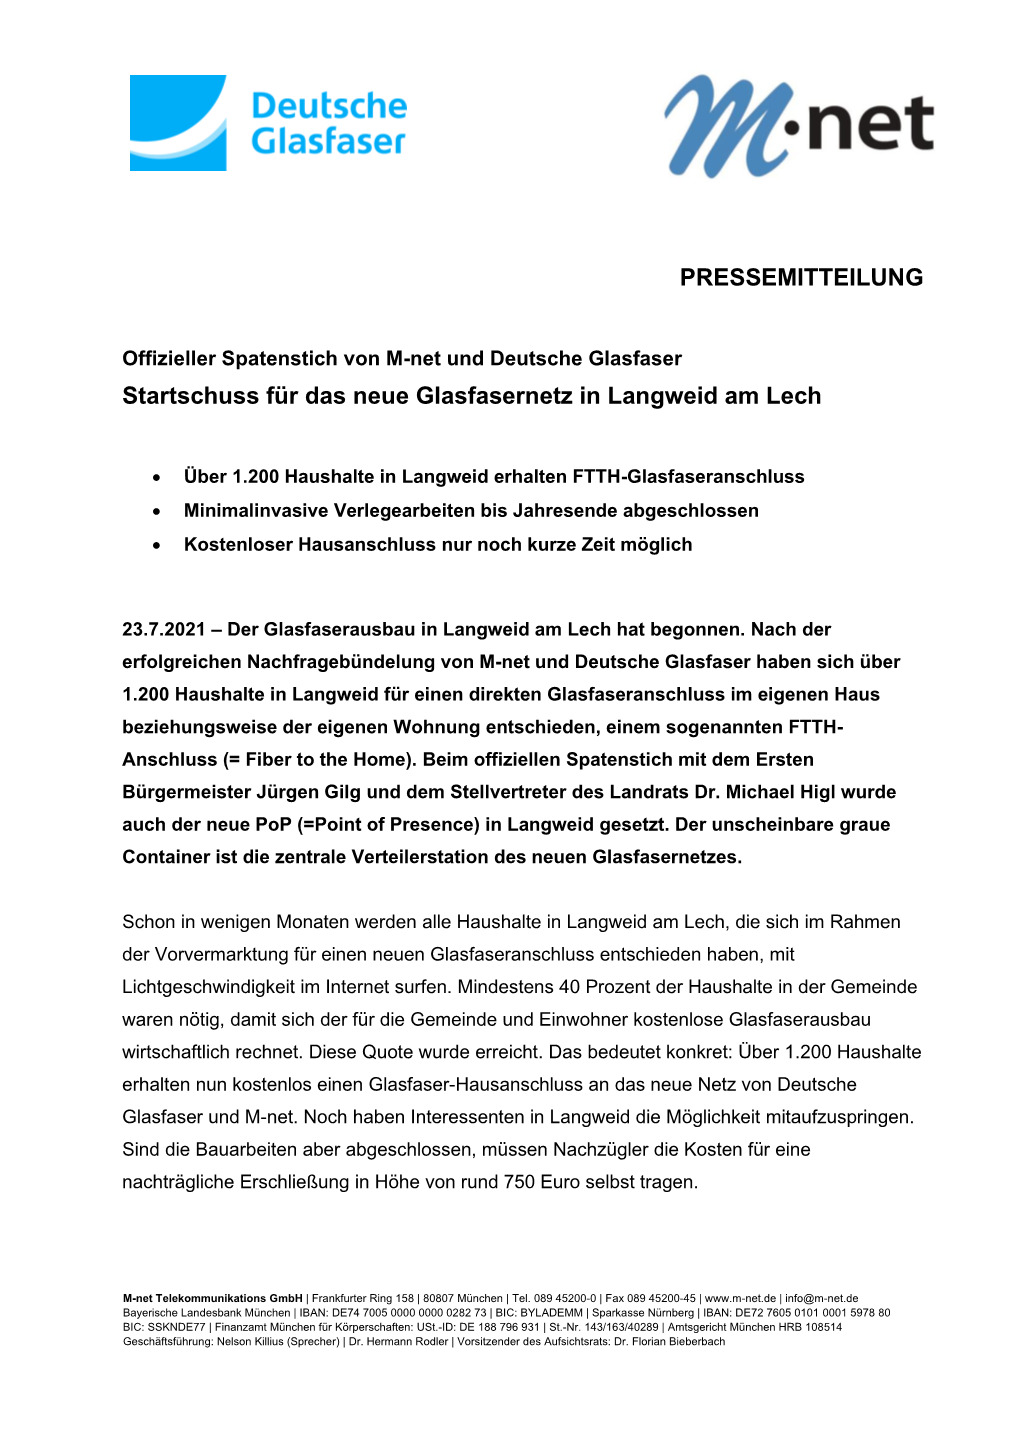 PRESSEMITTEILUNG Startschuss Für Das Neue Glasfasernetz in Langweid Am Lech